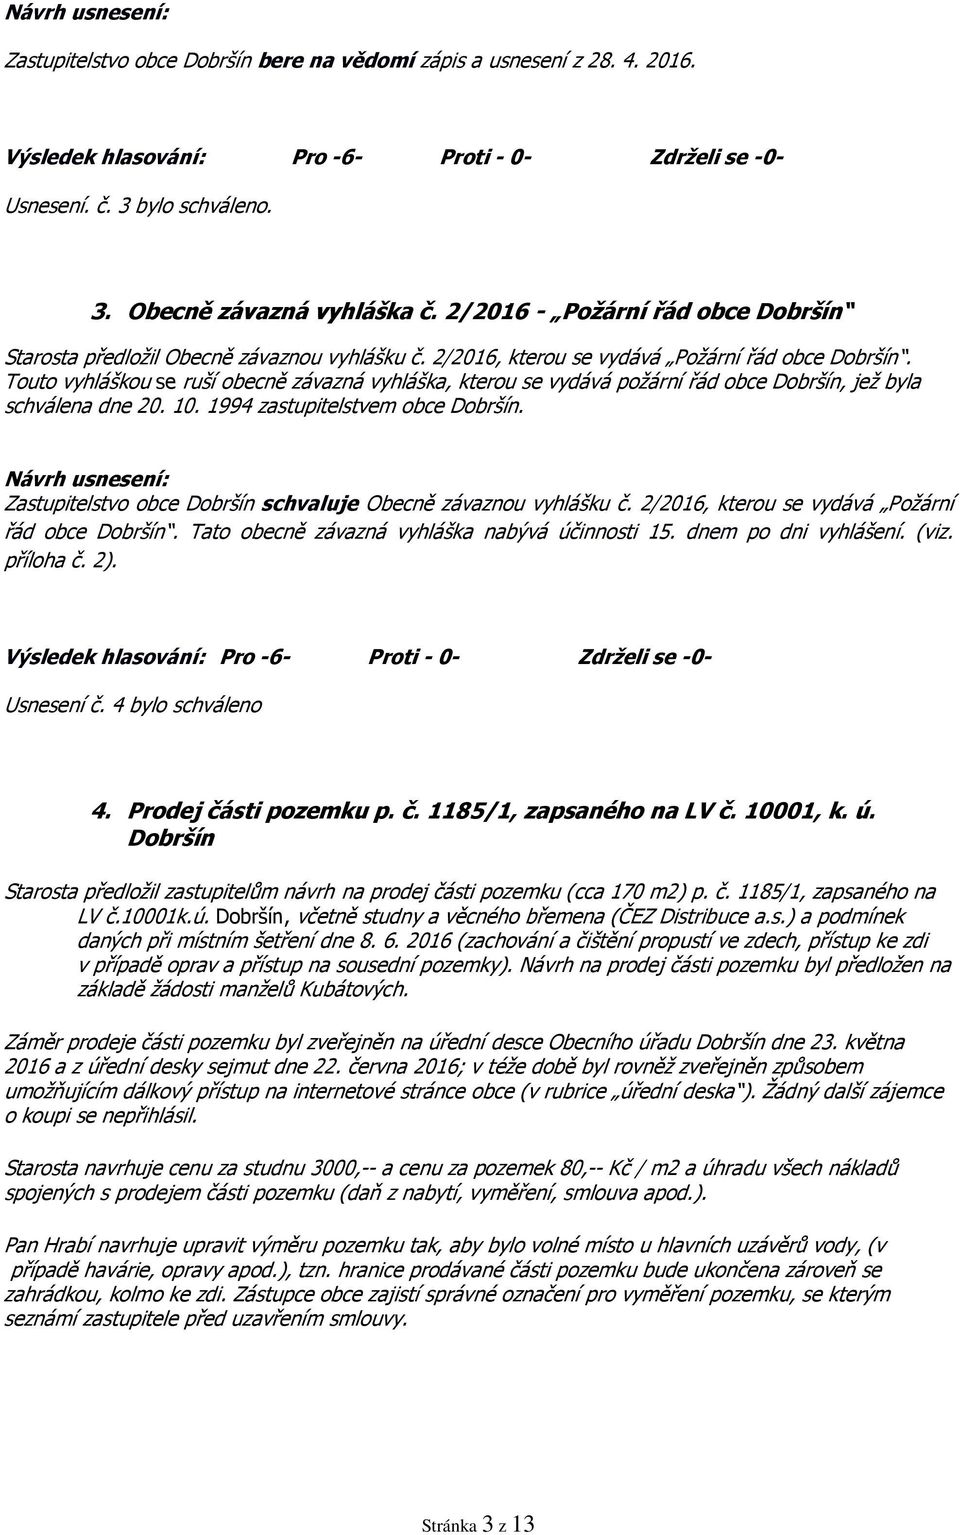 Touto vyhláškou se ruší obecně závazná vyhláška, kterou se vydává požární řád obce Dobršín, jež byla schválena dne 20. 10. 1994 zastupitelstvem obce Dobršín.